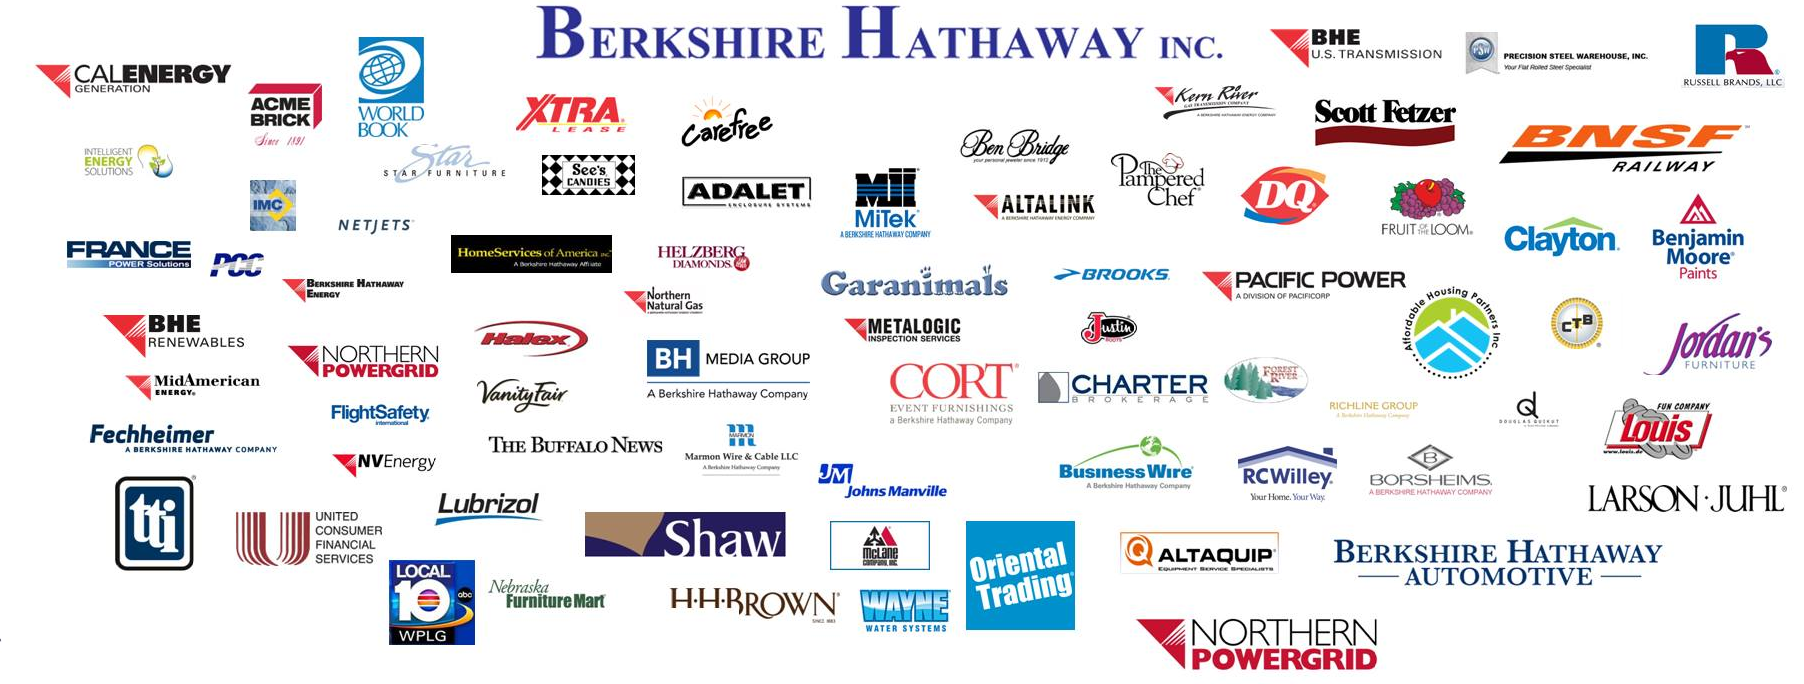 Abbildung der Firmenlogos aller Unternehmen der Holding Gesellschaft Berkshire Hathaway